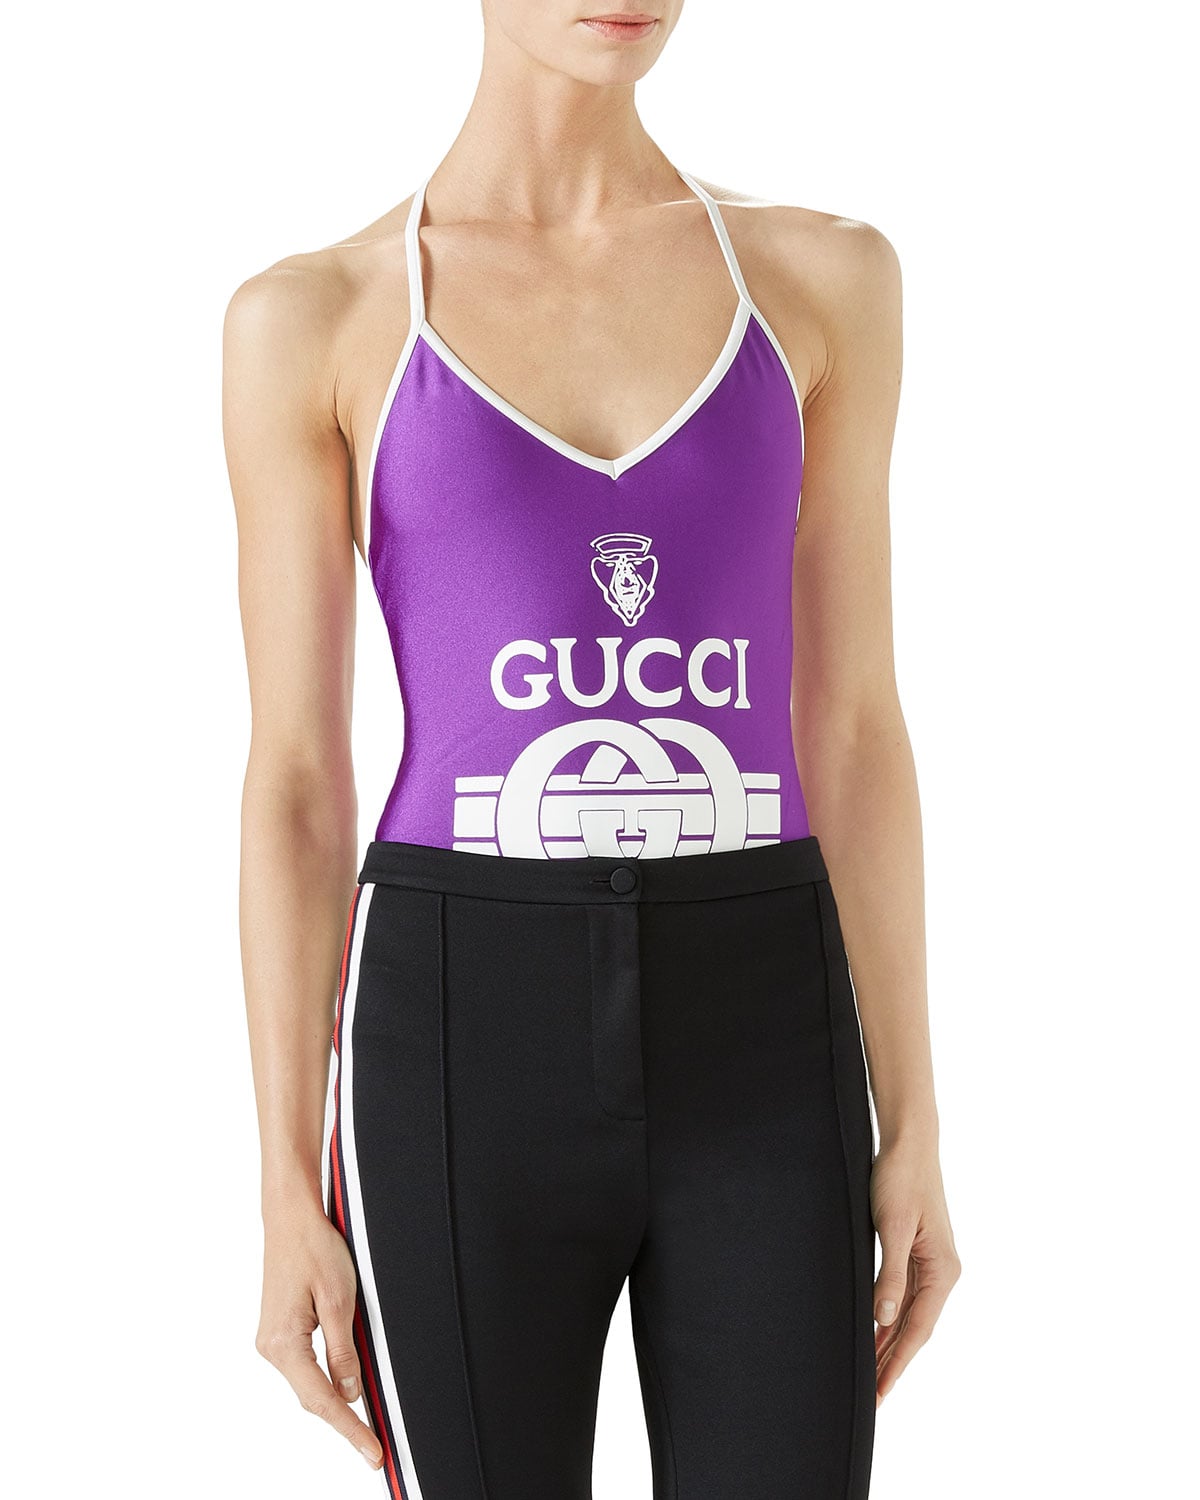 Gucci, Swim, Gucci Bathing Suit